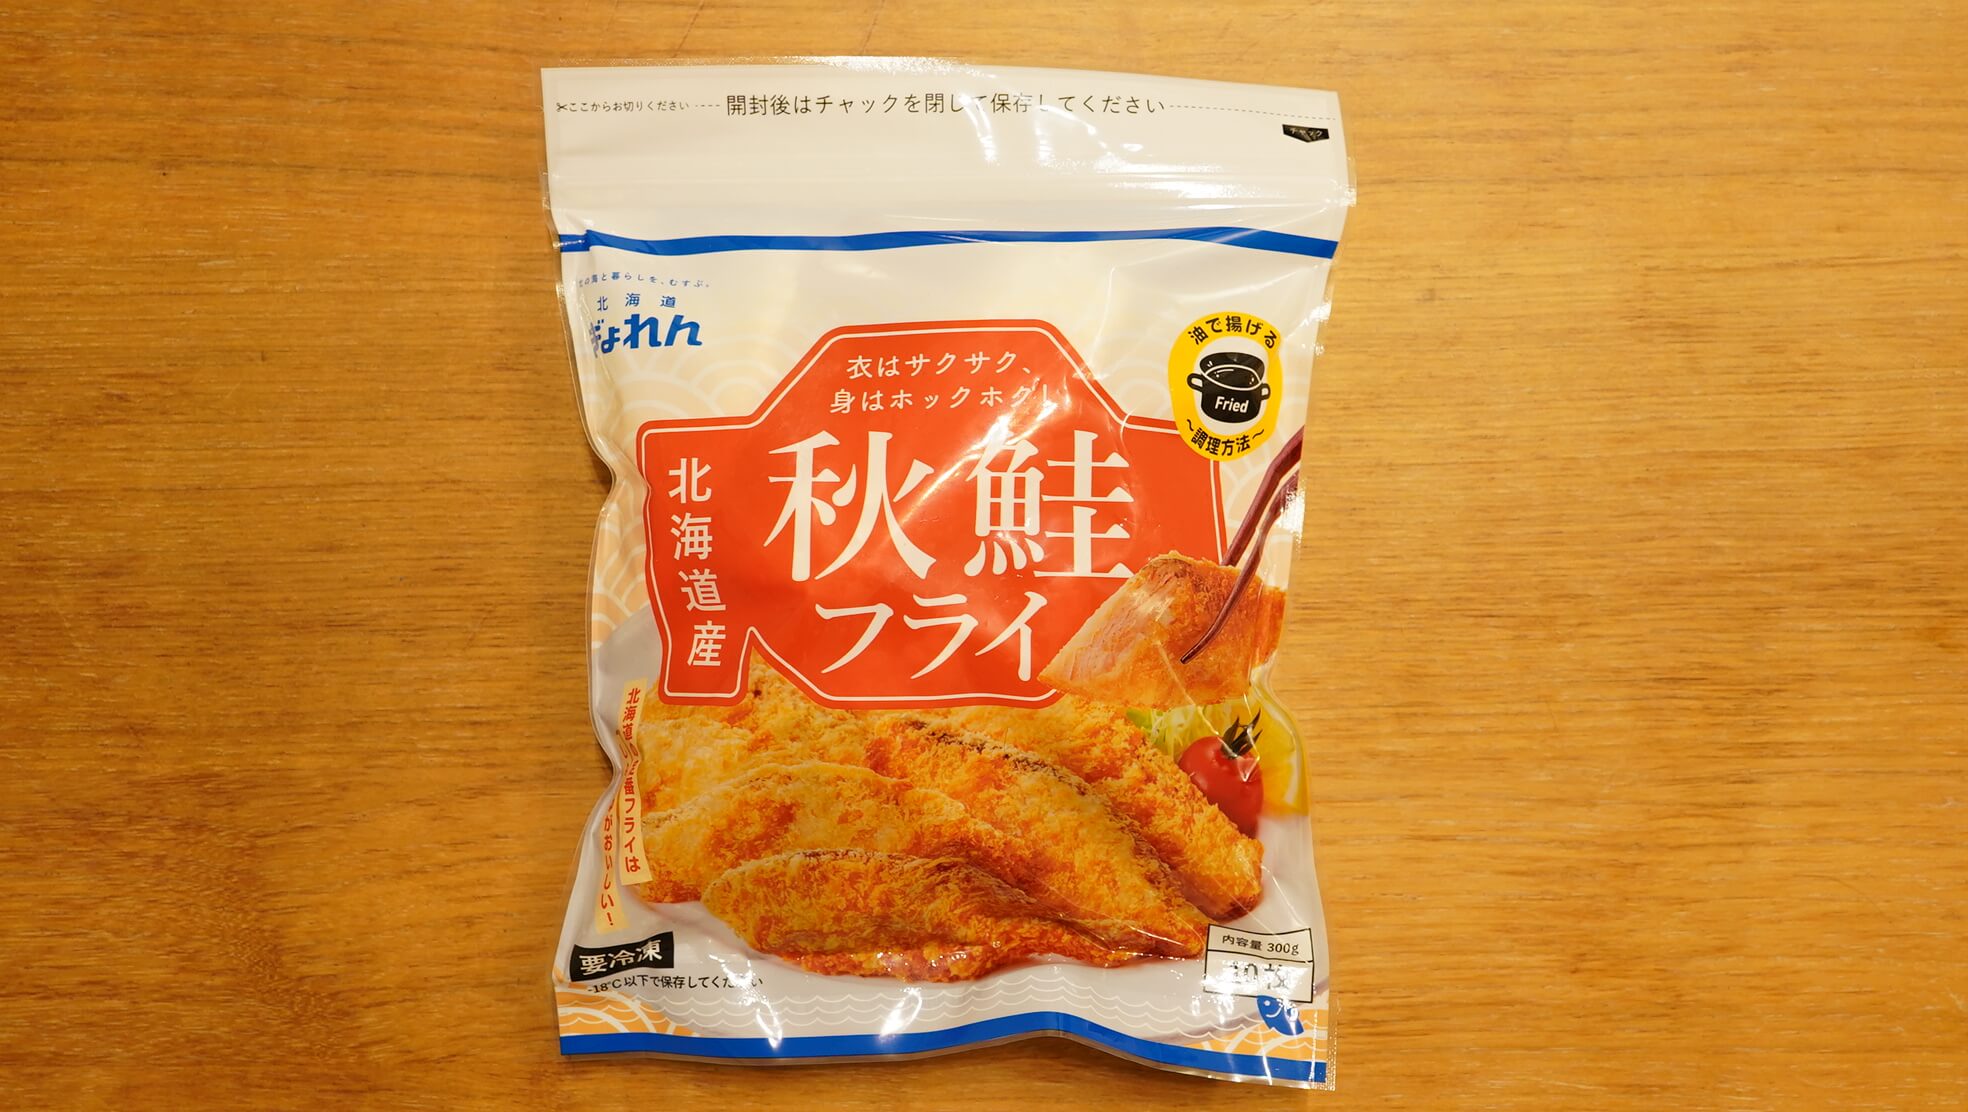 生協coop宅配の冷凍食品「秋鮭フライ」のパッケージ写真